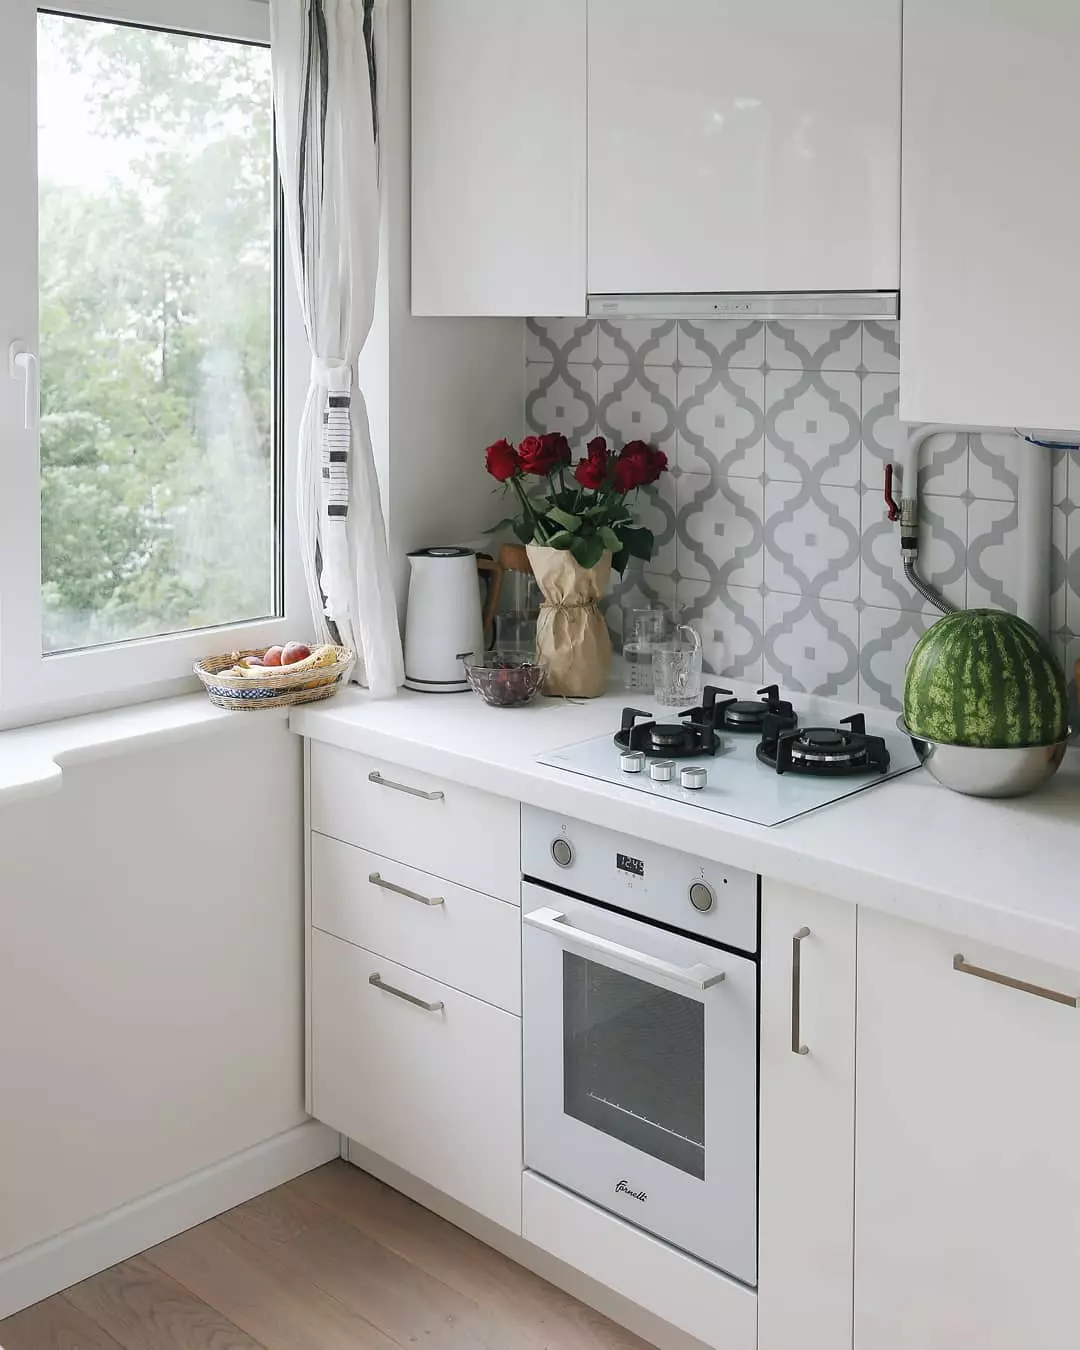 Մինիմալիստական ​​սպիտակ խոհանոց `գոգնոցի լուսանկարով